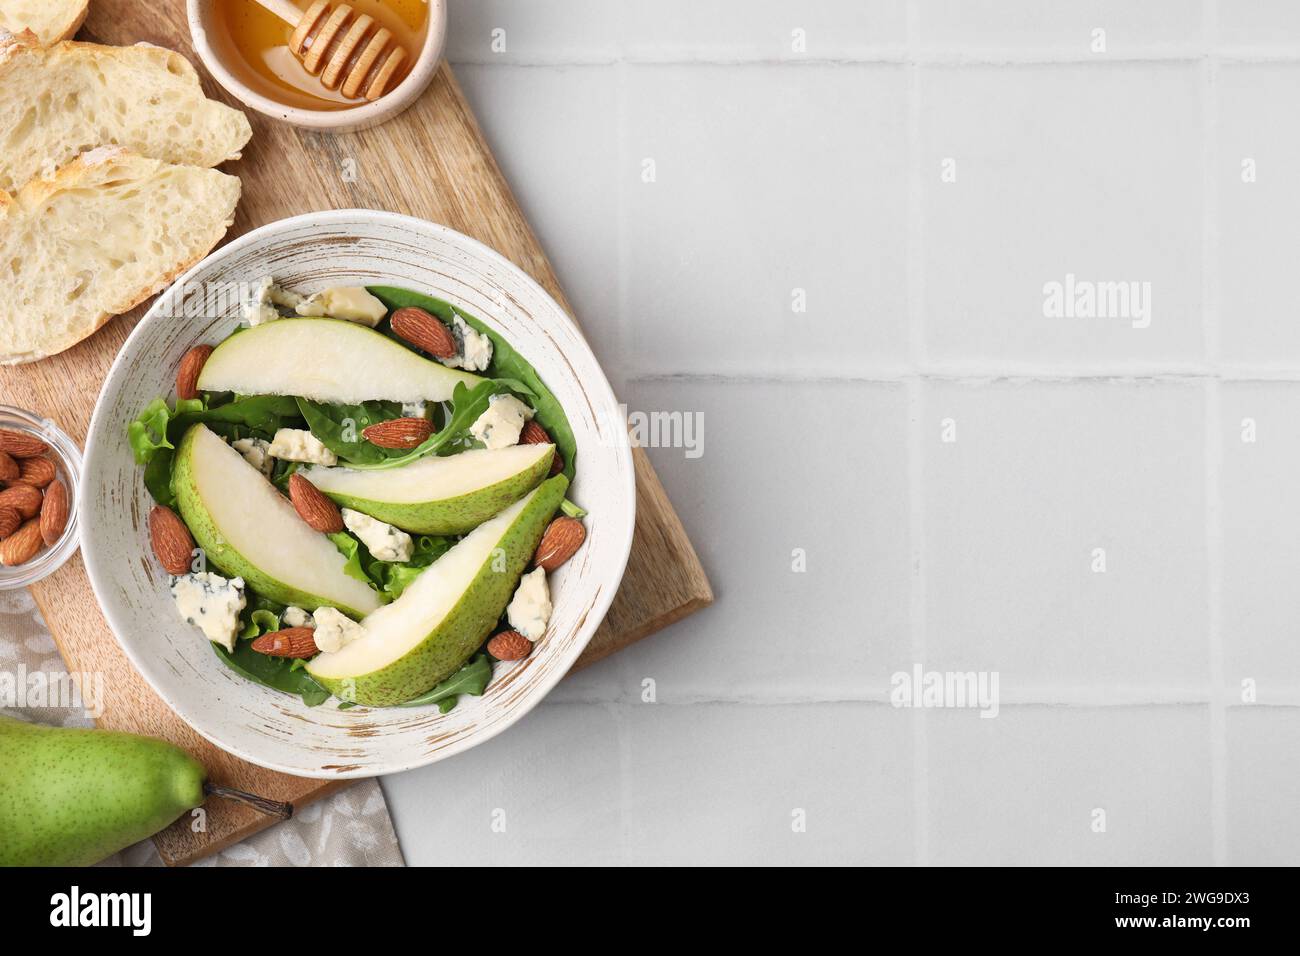 Délicieuse salade de poires dans un bol et produits sur une table carrelée légère, vue de dessus. Espace pour le texte Banque D'Images